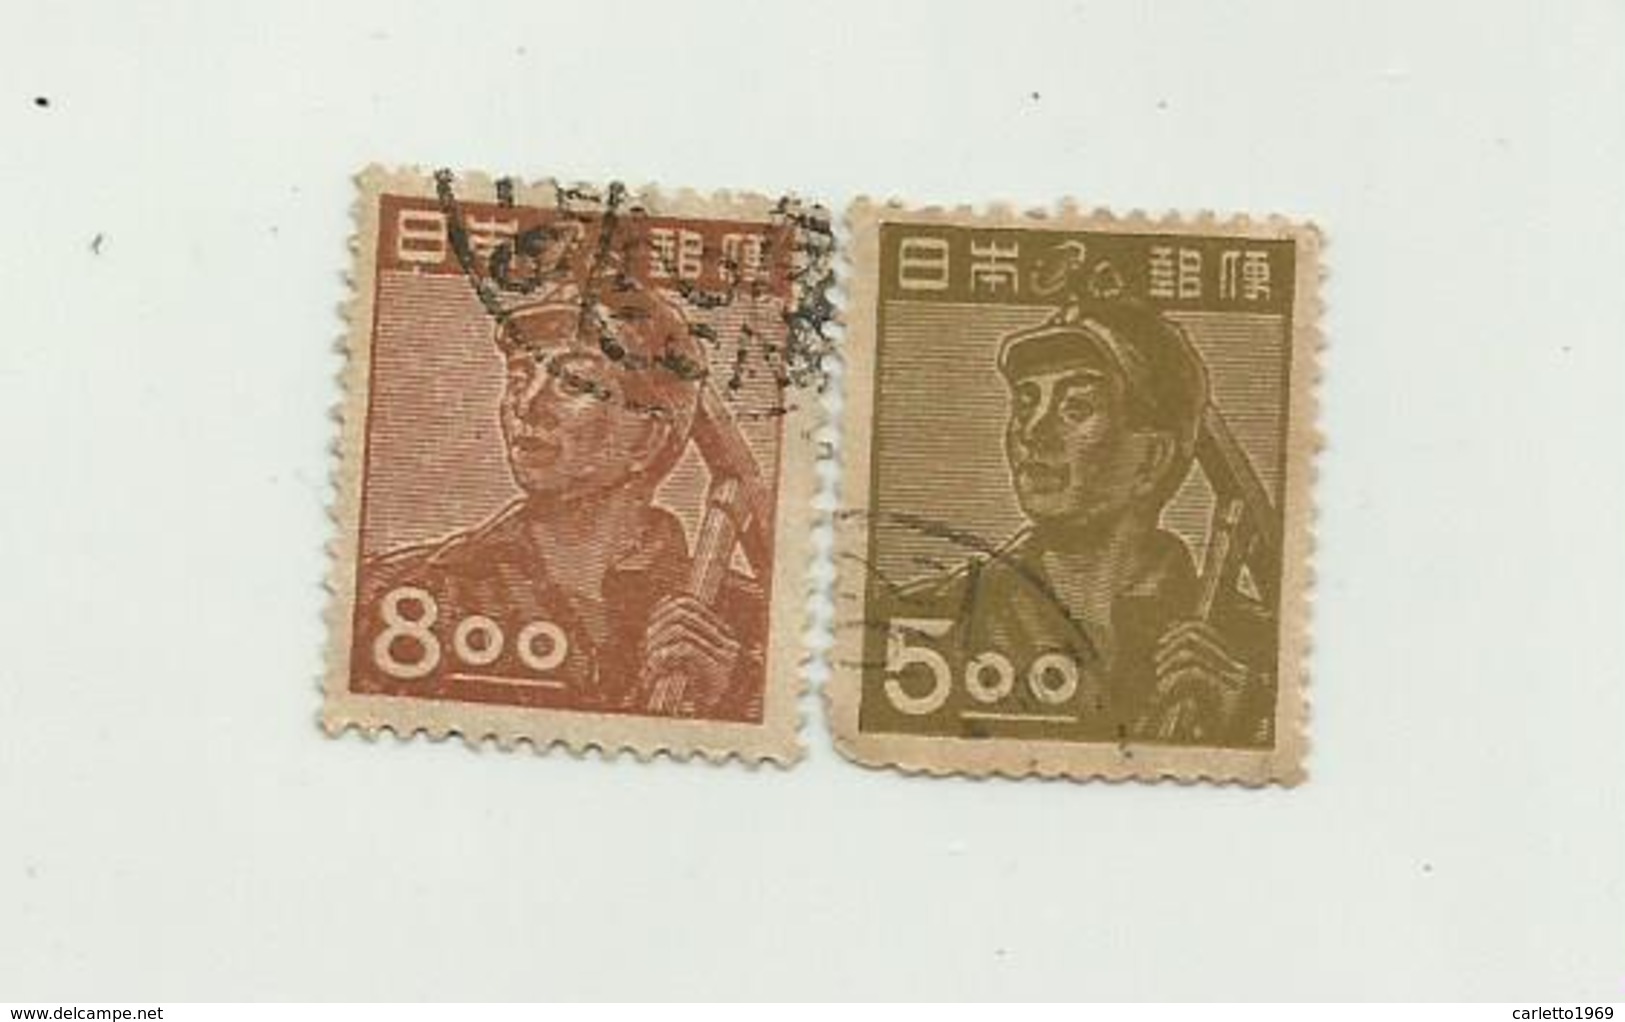 2 Francobolli Giappone Da 800 E 500 - Gebraucht